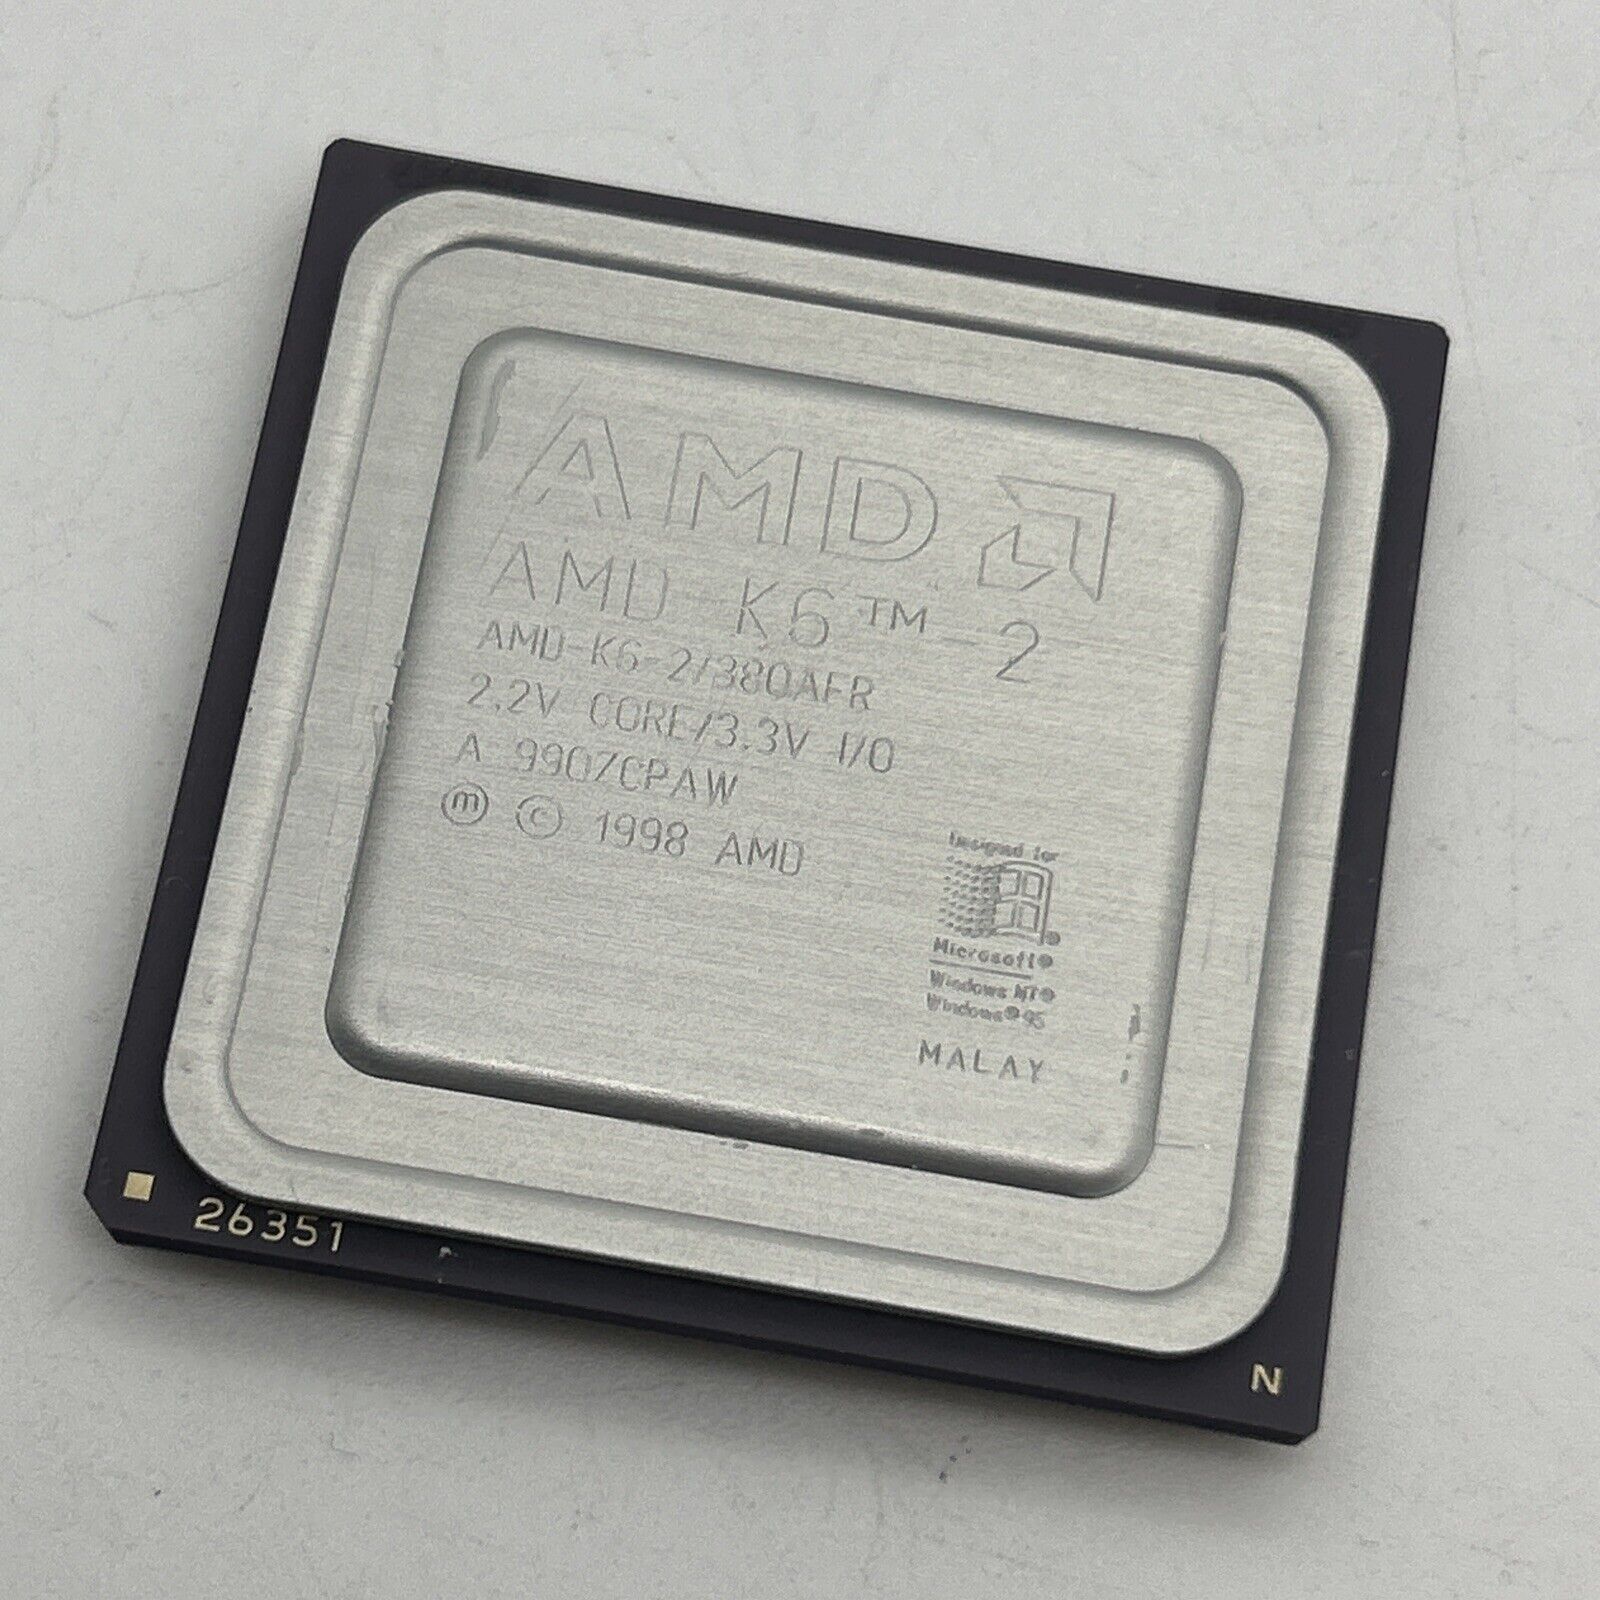 AMD K6-2 380AFR AFQ 380MHz 2.2v core 3.3V Socket 7 CPU 1998 Vintage K6-II AFR